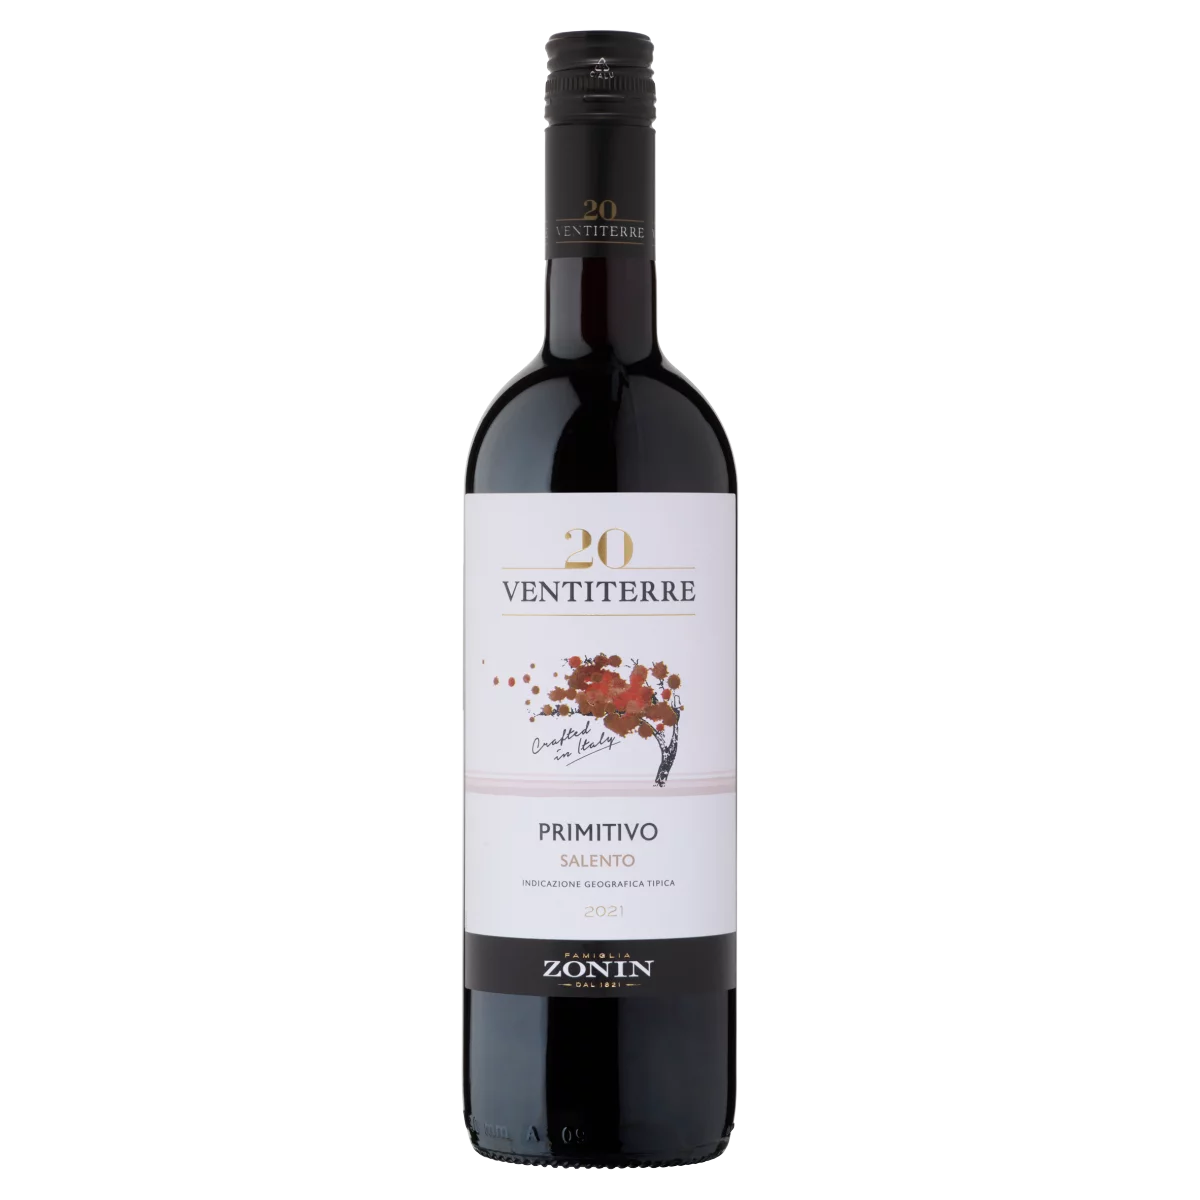 Zonin Ventiterre Primitivo száraz vörösbor 13,5% 750 ml